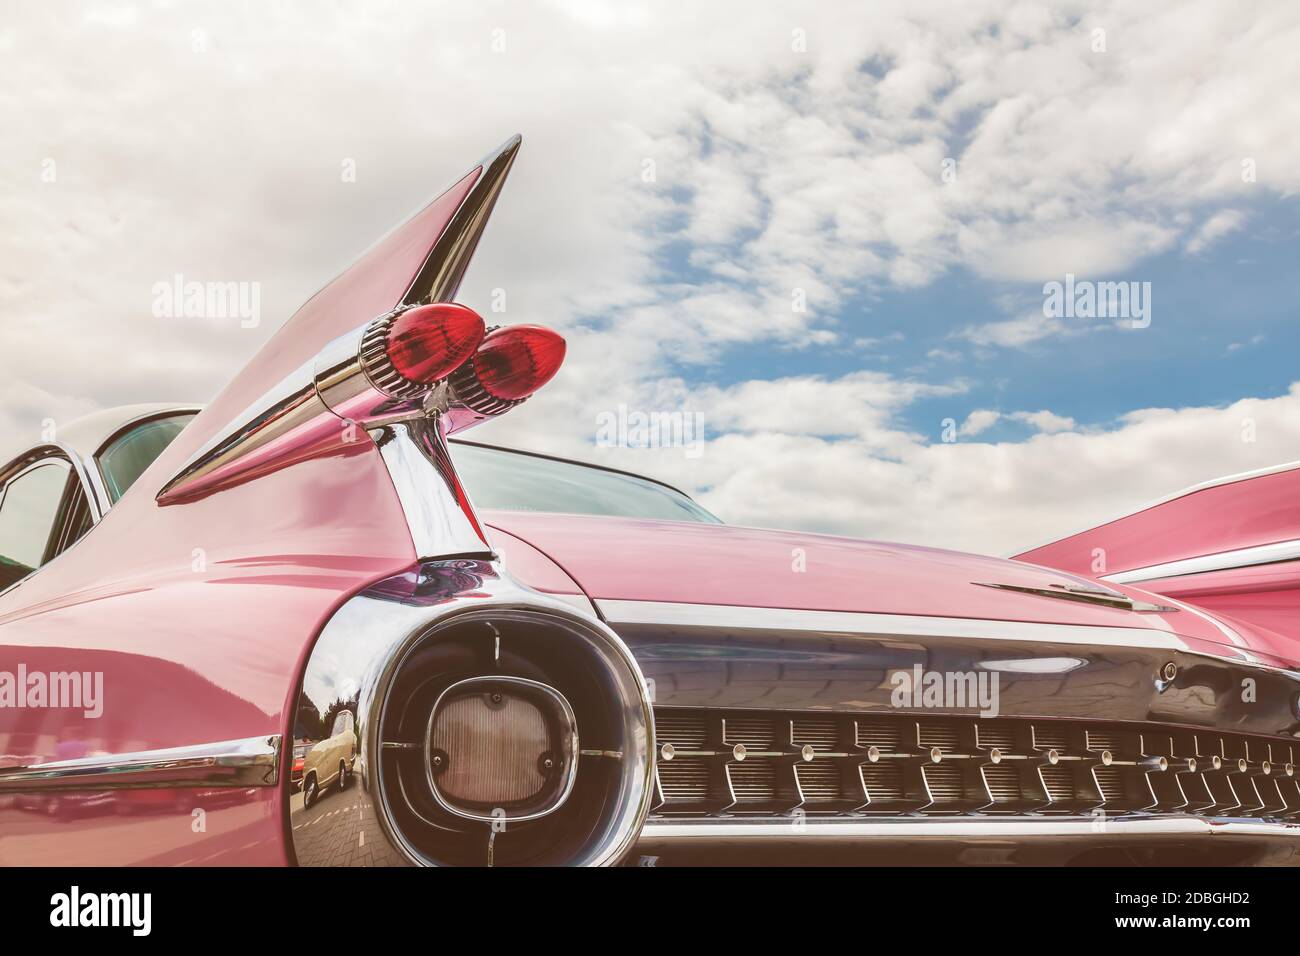 Den Bosch, PAYS-BAS - 14 MAI 2017: Arrière d'une voiture classique rose Cadillac années 50 à Den Bosch, Pays-Bas Banque D'Images